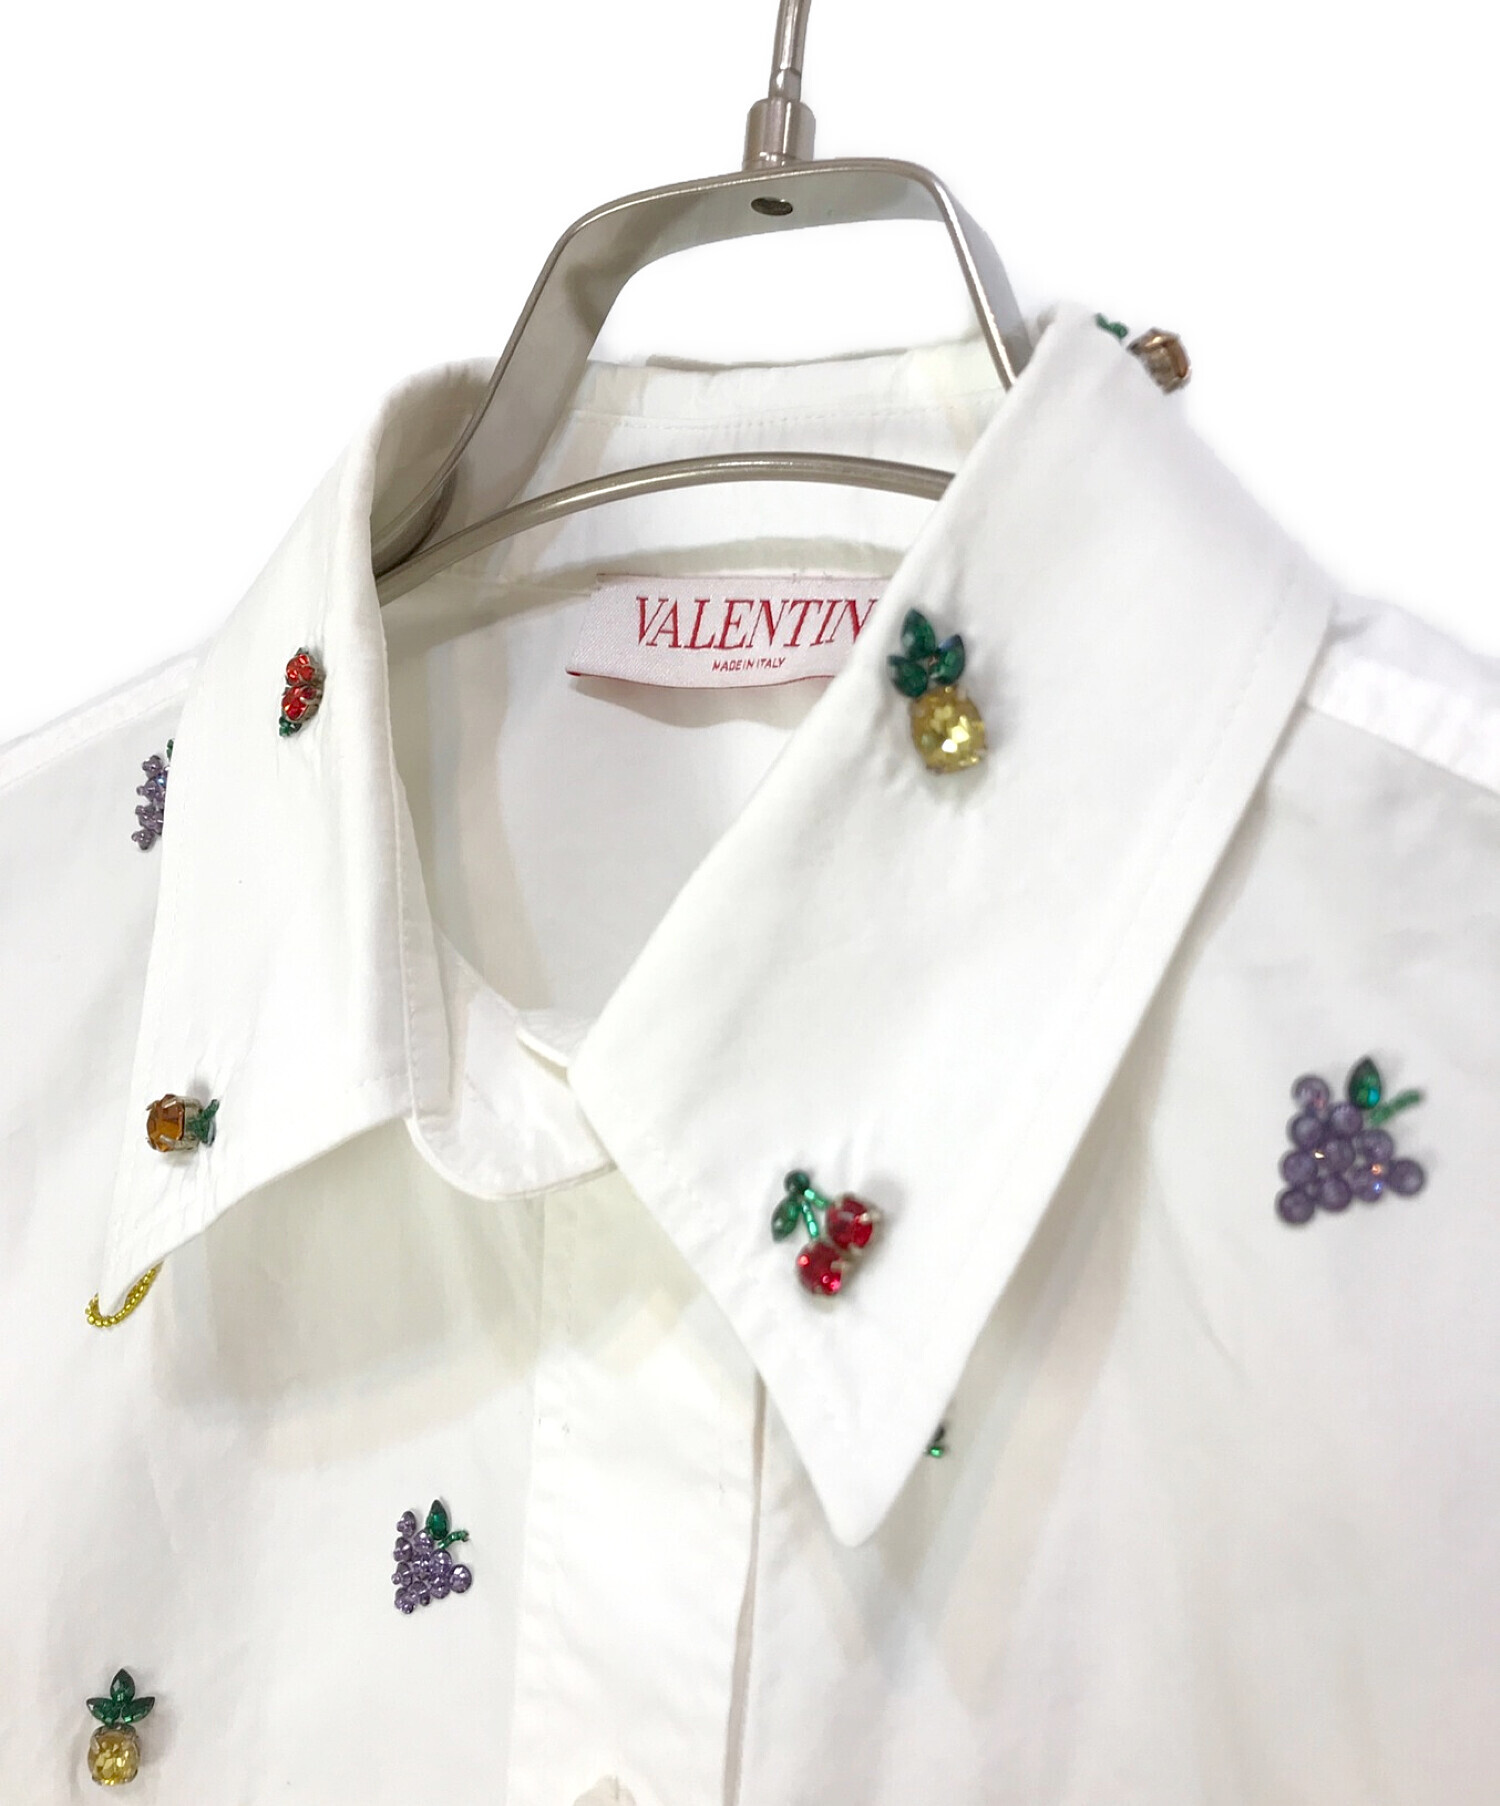 VALENTINO (ヴァレンティノ) フルーツビーズシャツ ホワイト サイズ:38